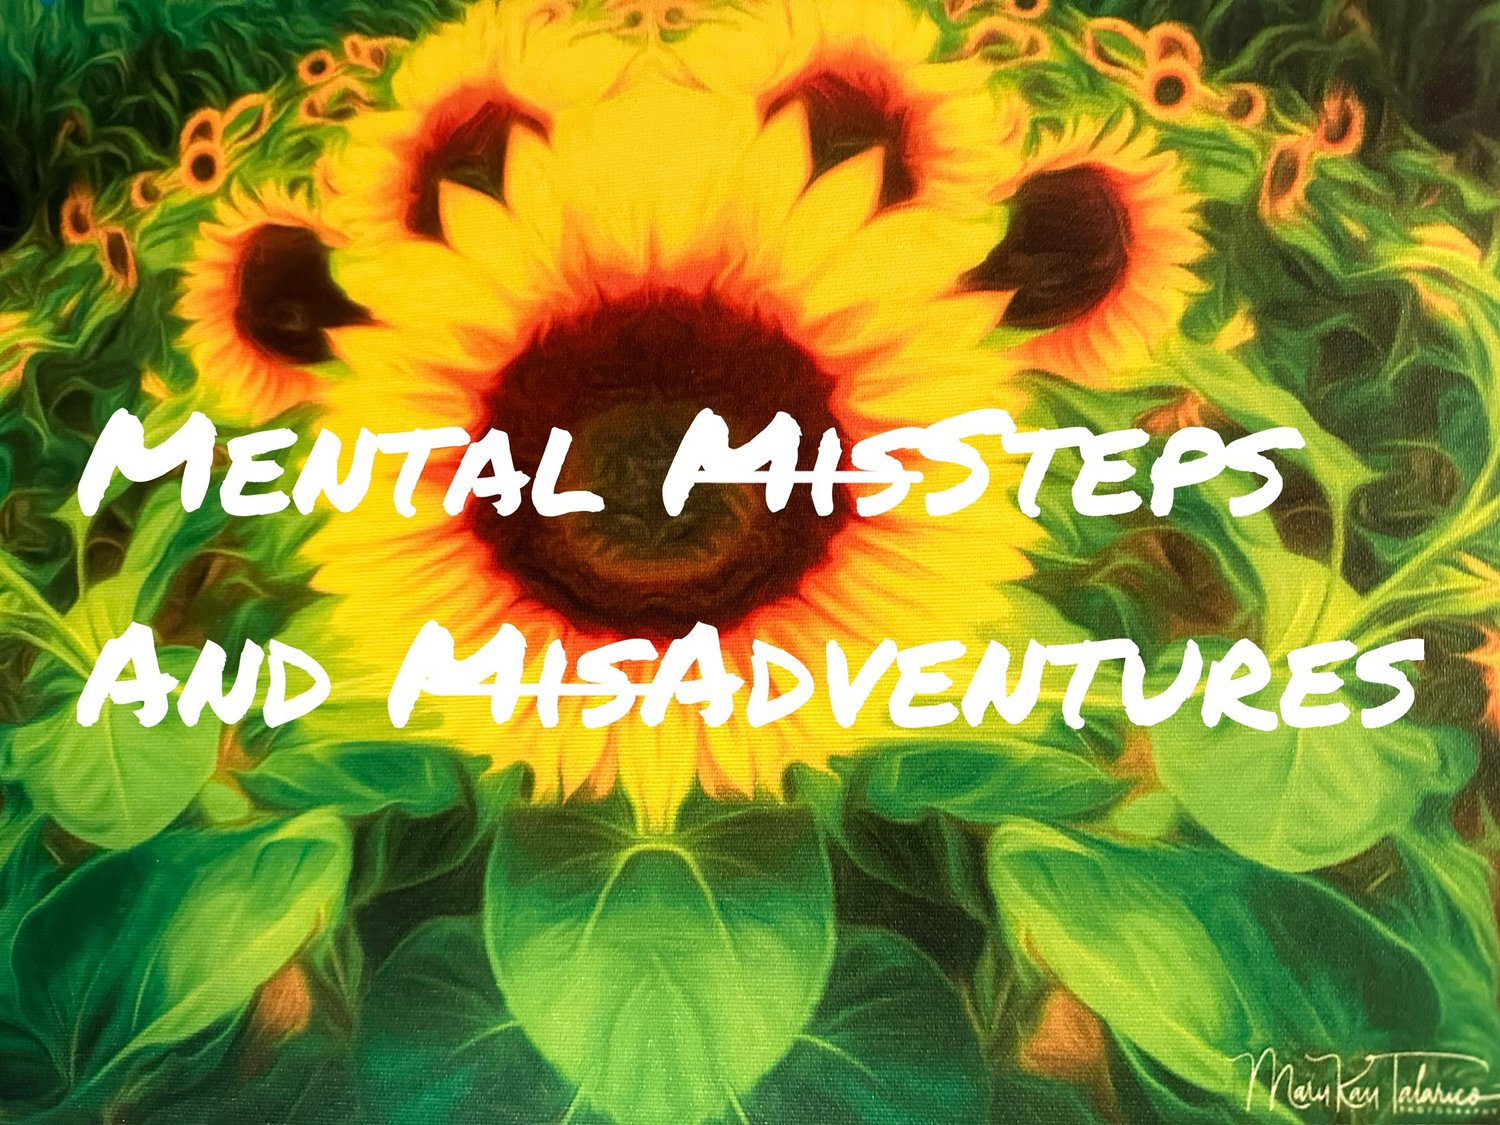 Mental MisSteps and MisAdventures